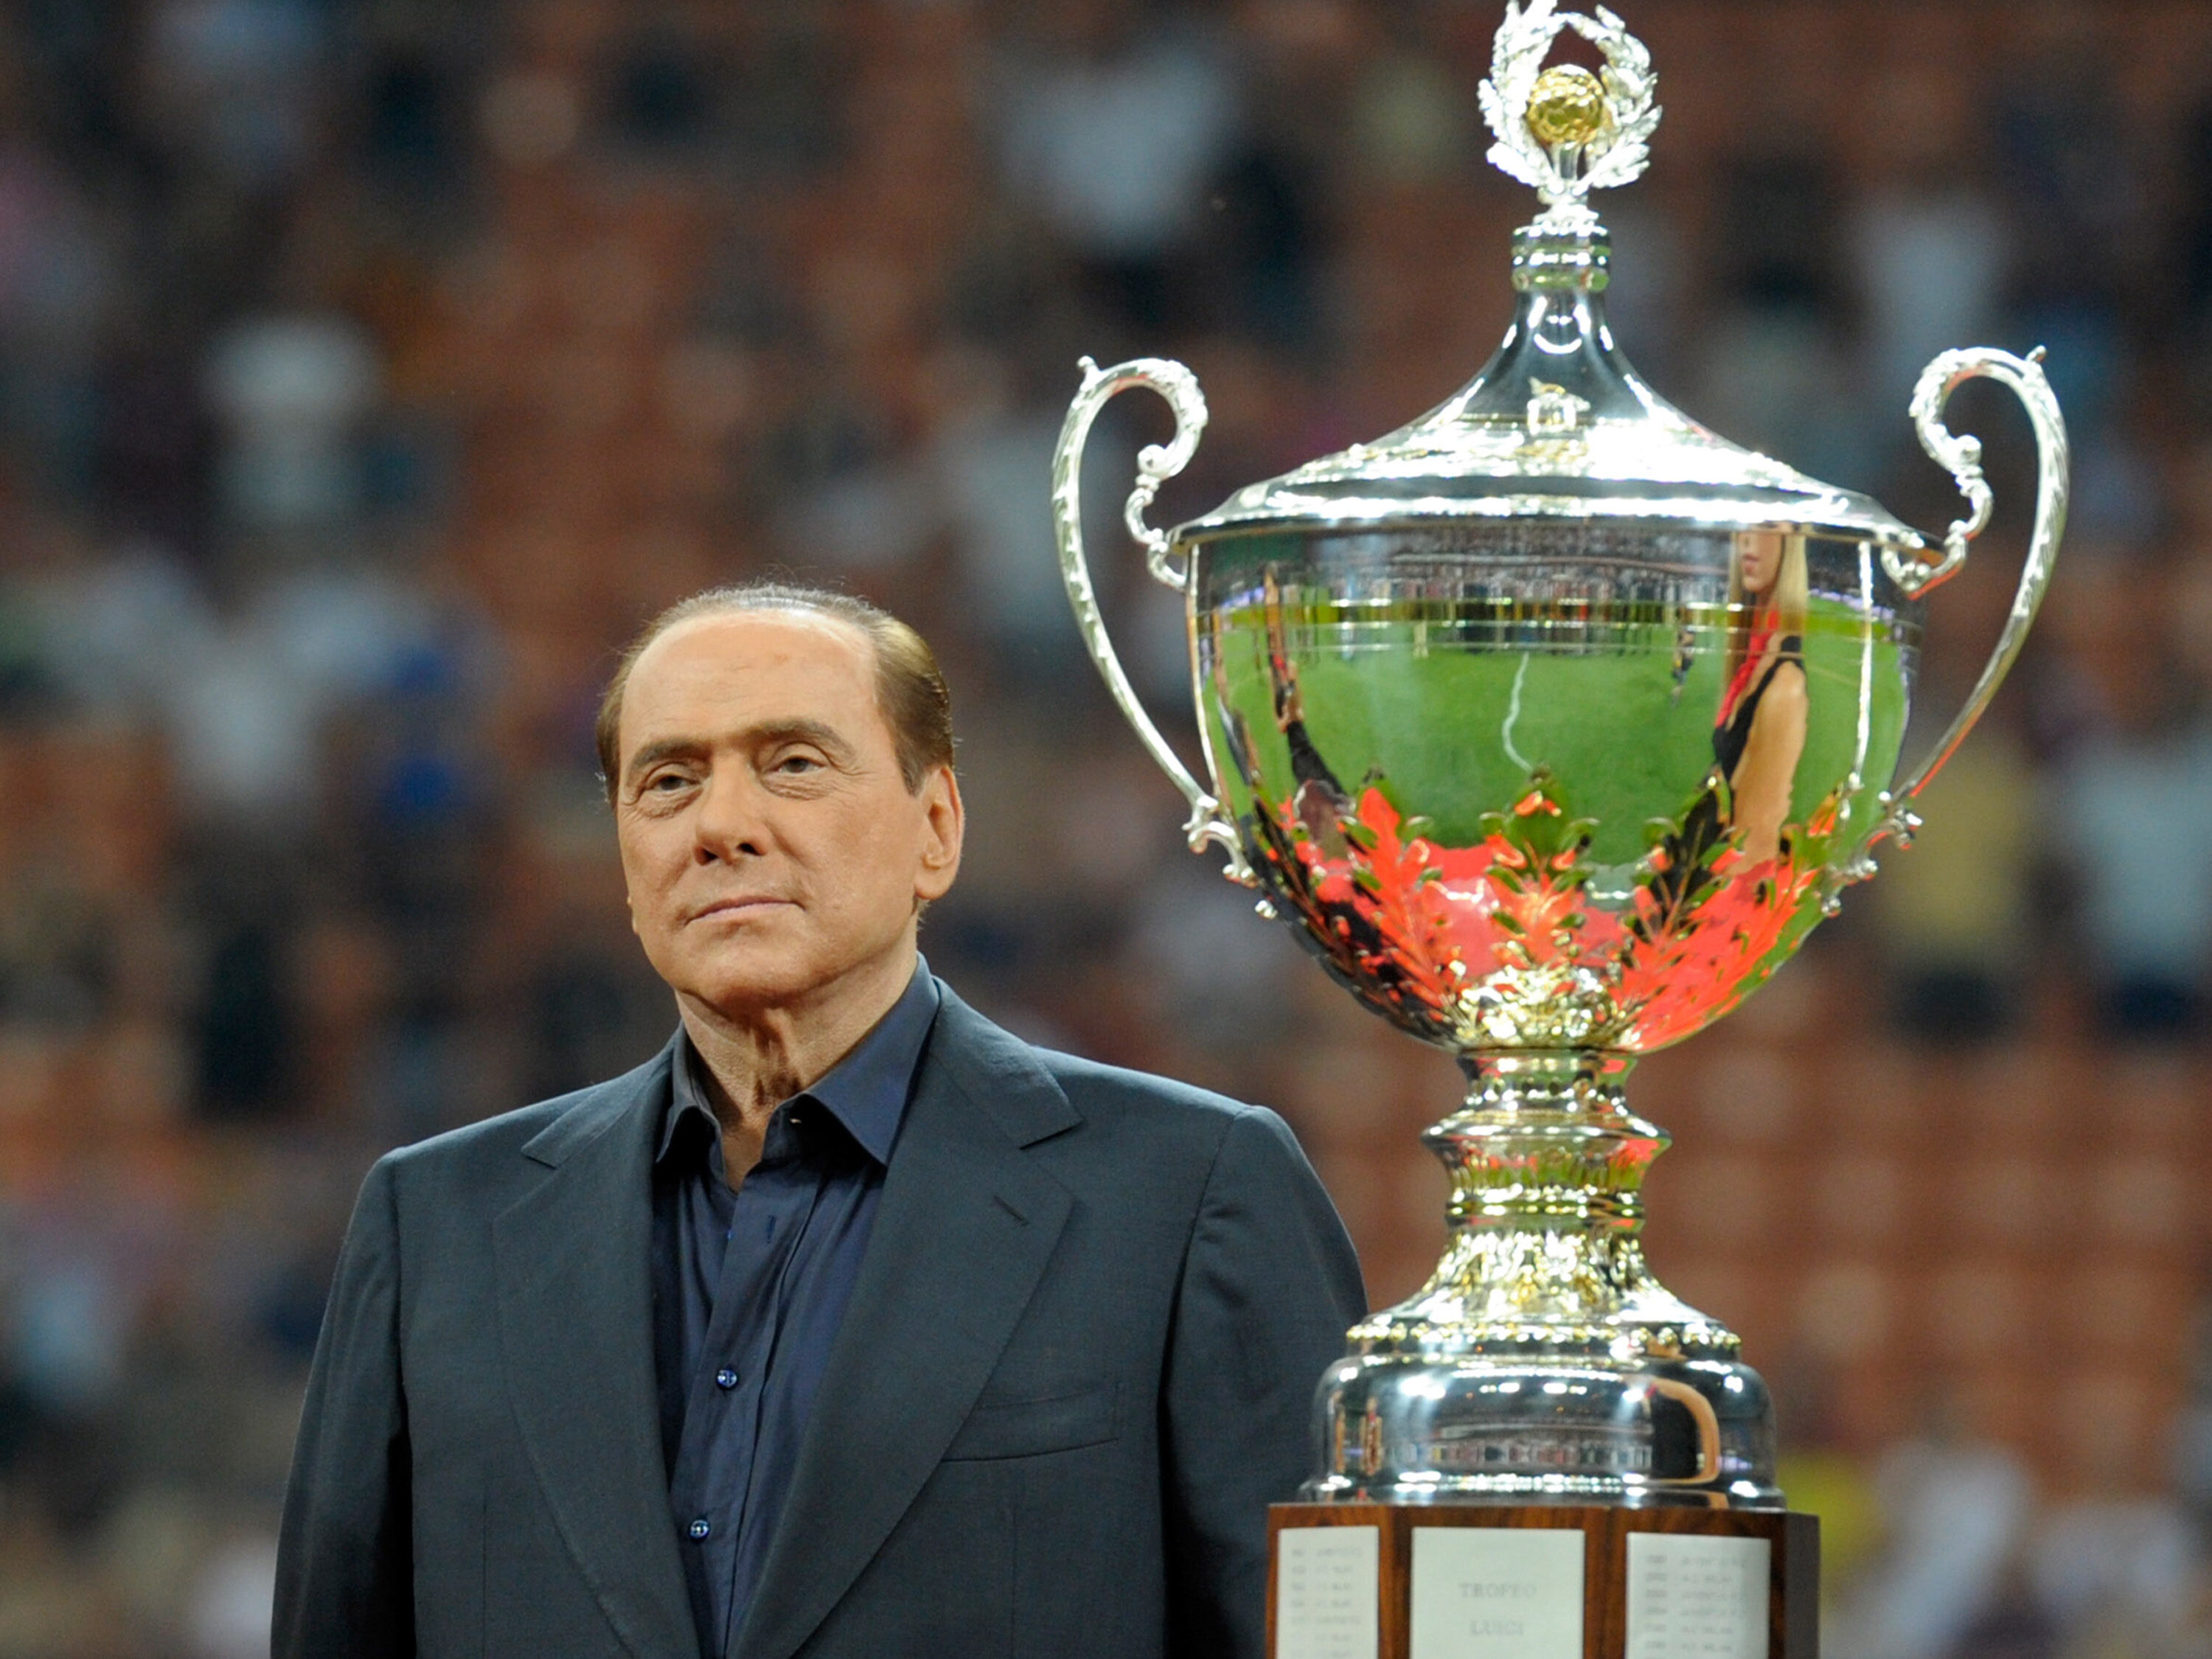 Morre Silvio Berlusconi, ex-dono do Milan, aos 86 anos